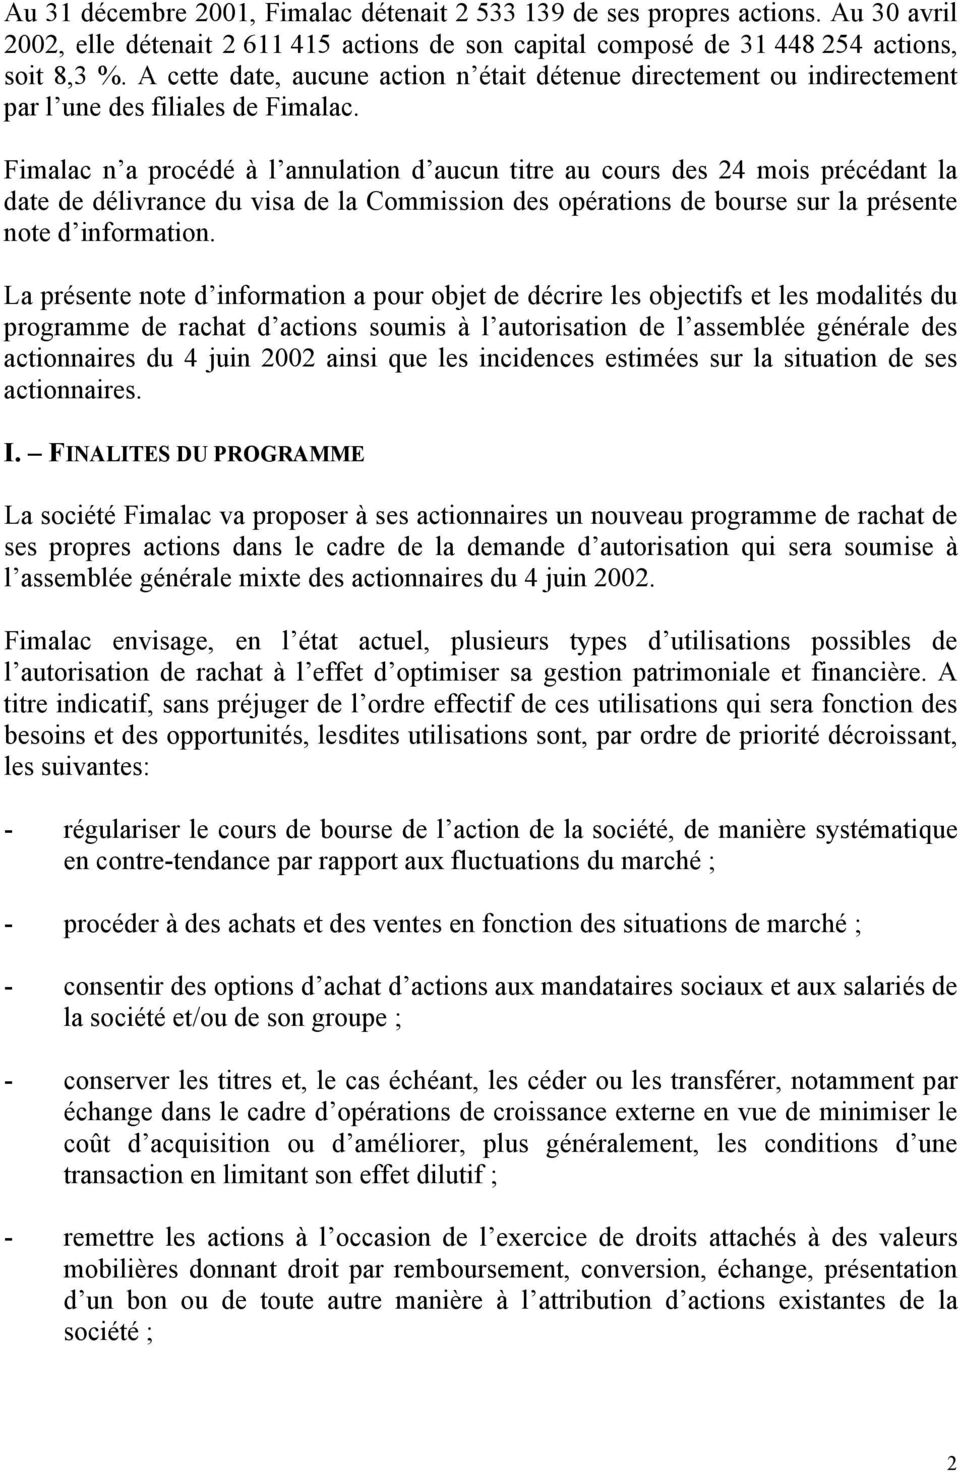 Fimalac n a procédé à l annulation d aucun titre au cours des 24 mois précédant la date de délivrance du visa de la Commission des opérations de bourse sur la présente note d information.